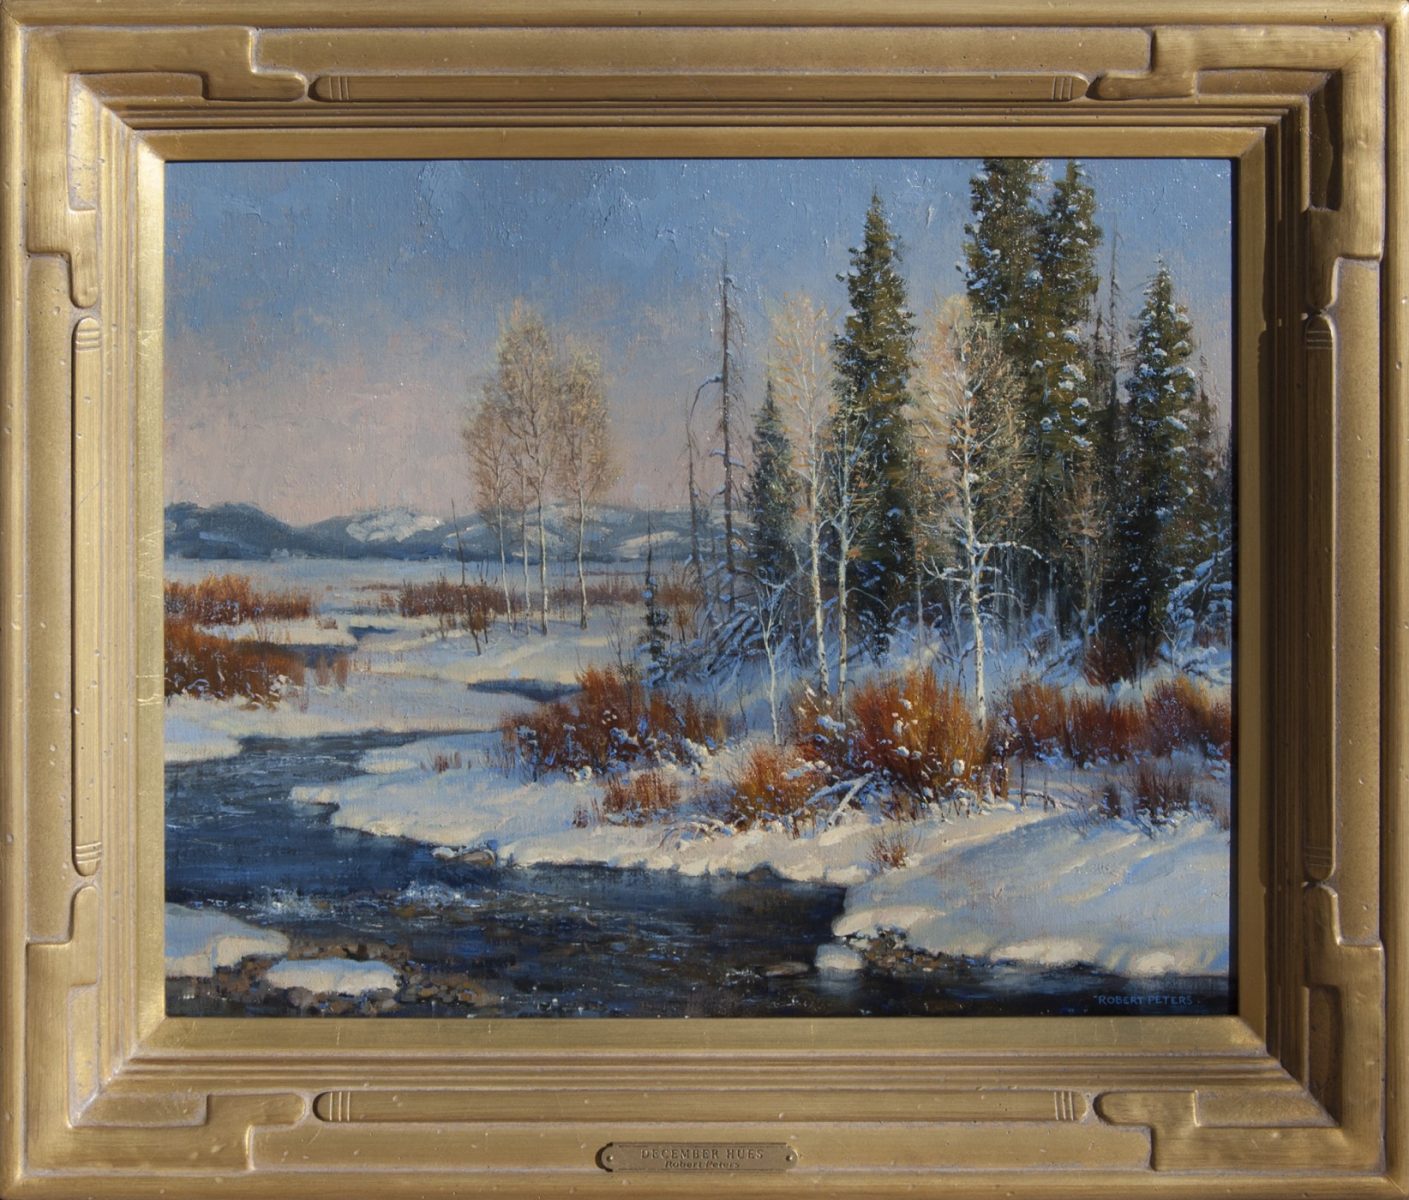 December Hues painting by Robert Peters